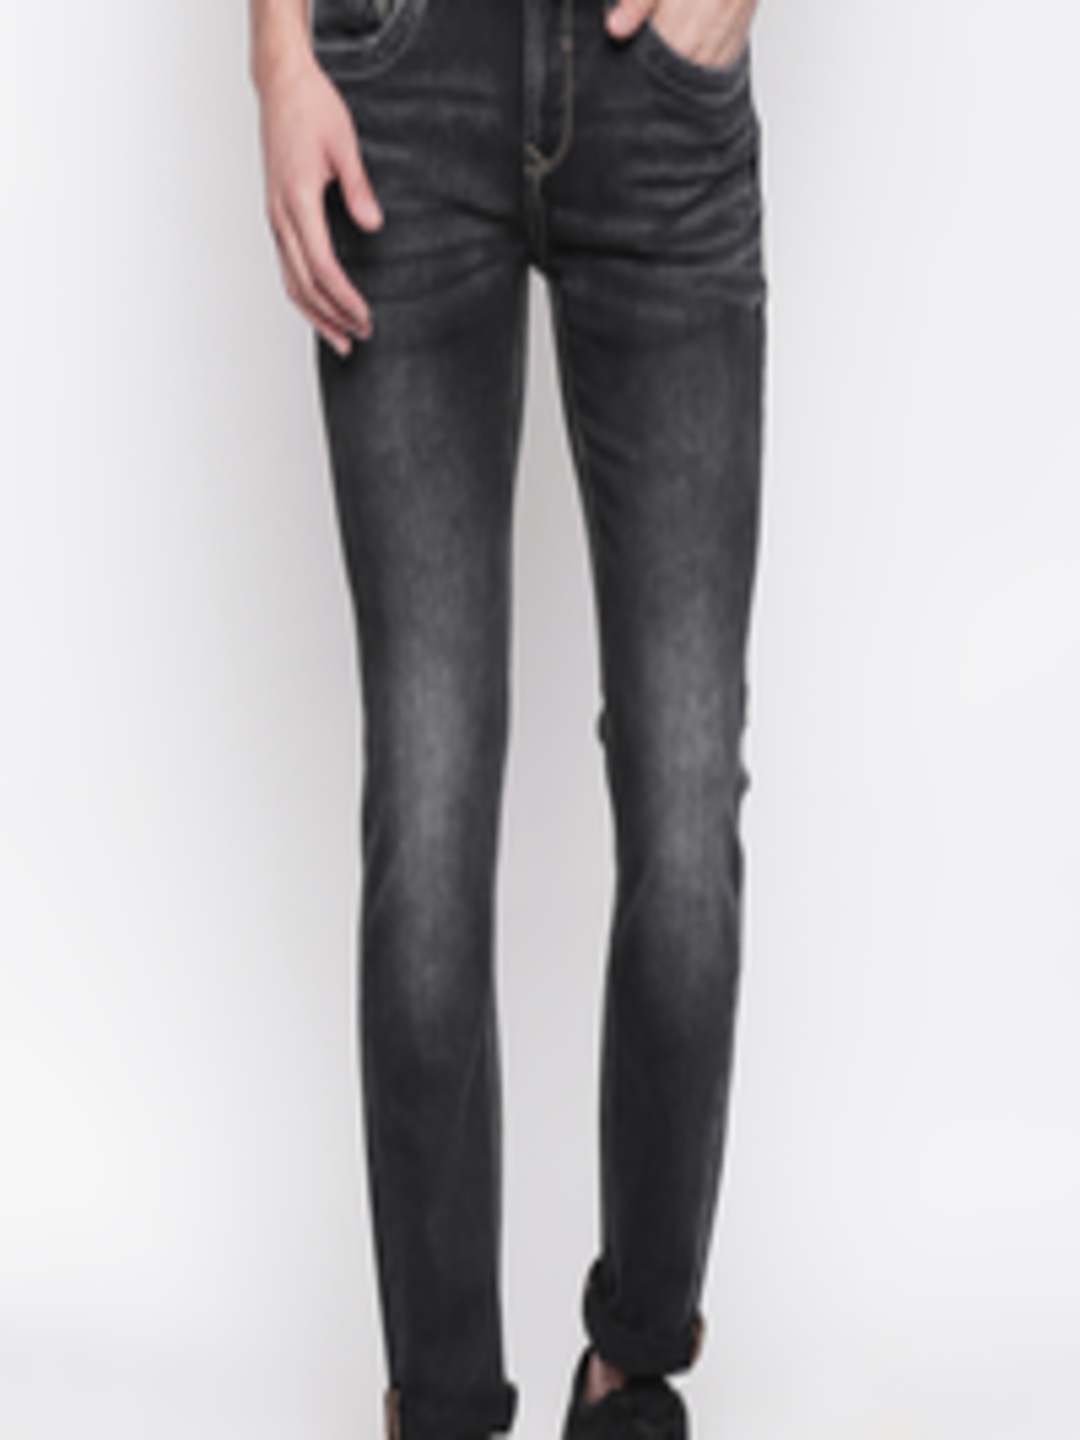 Buy SF JEANS By Pantaloons Men Black Skinny Fit Low Rise Clean Look ...